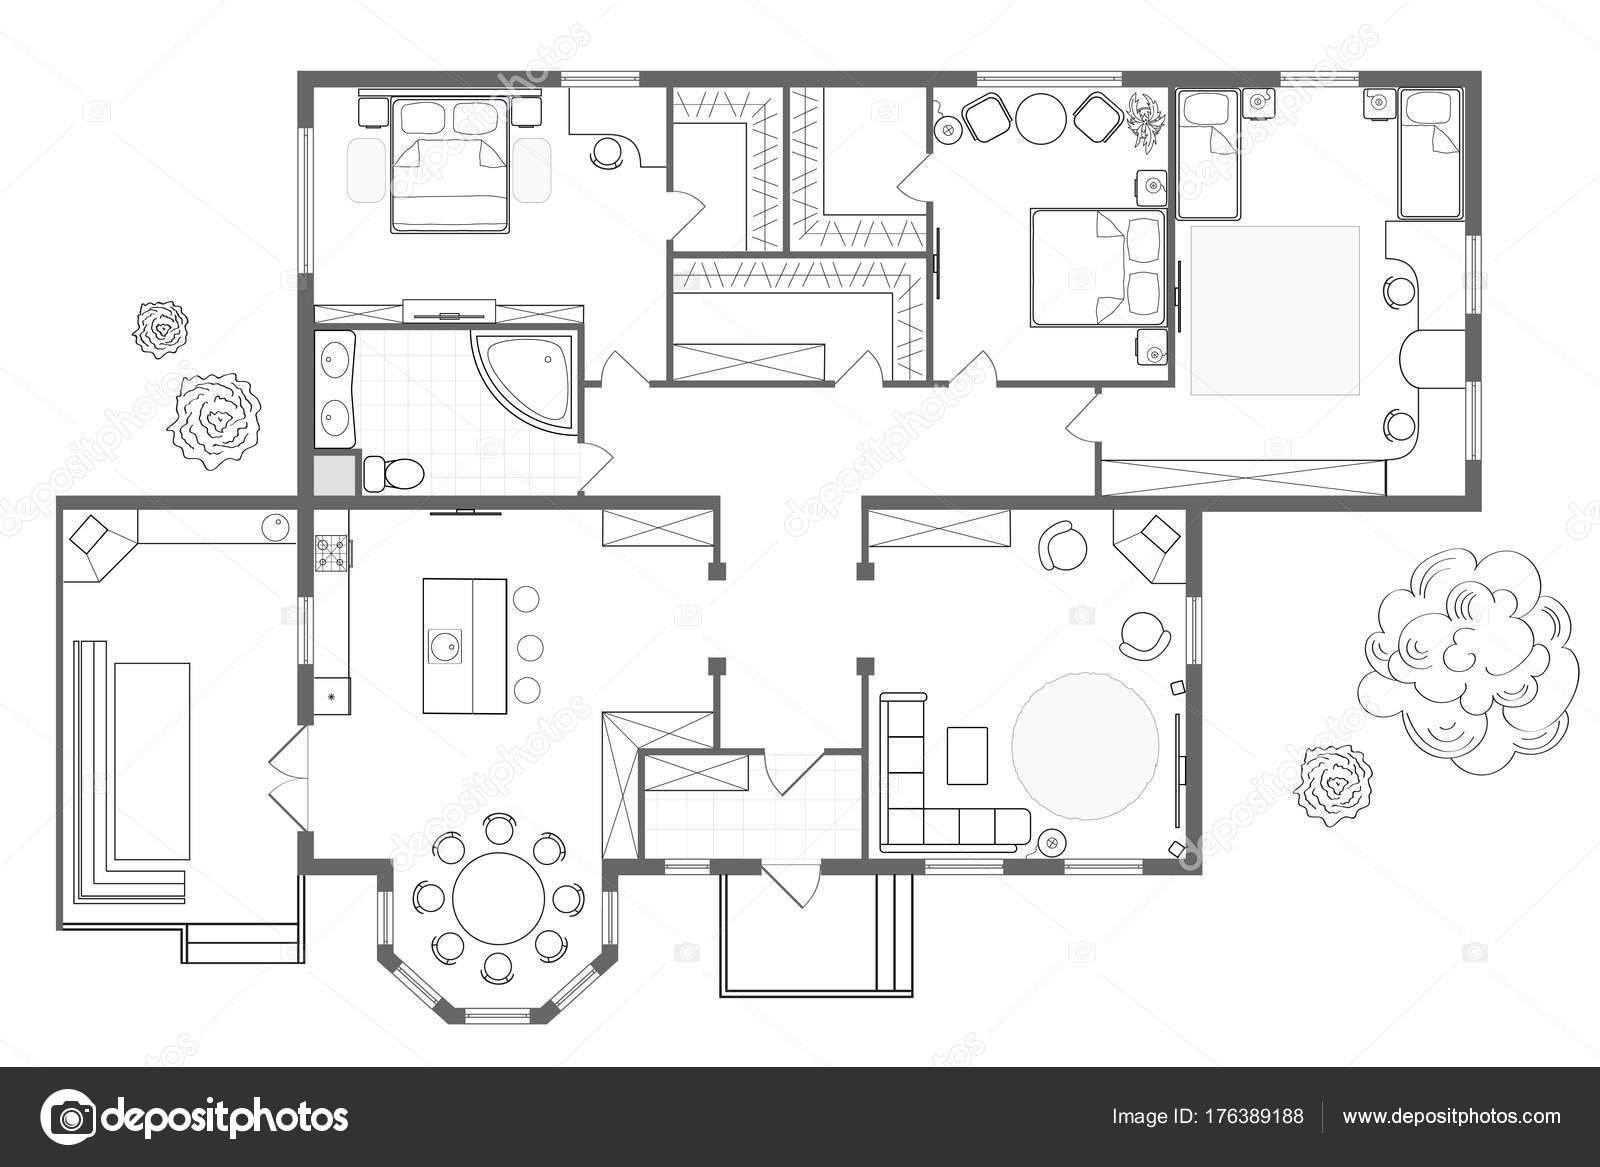 Dibujo profesional detallado de un diseño plano de casa estilo